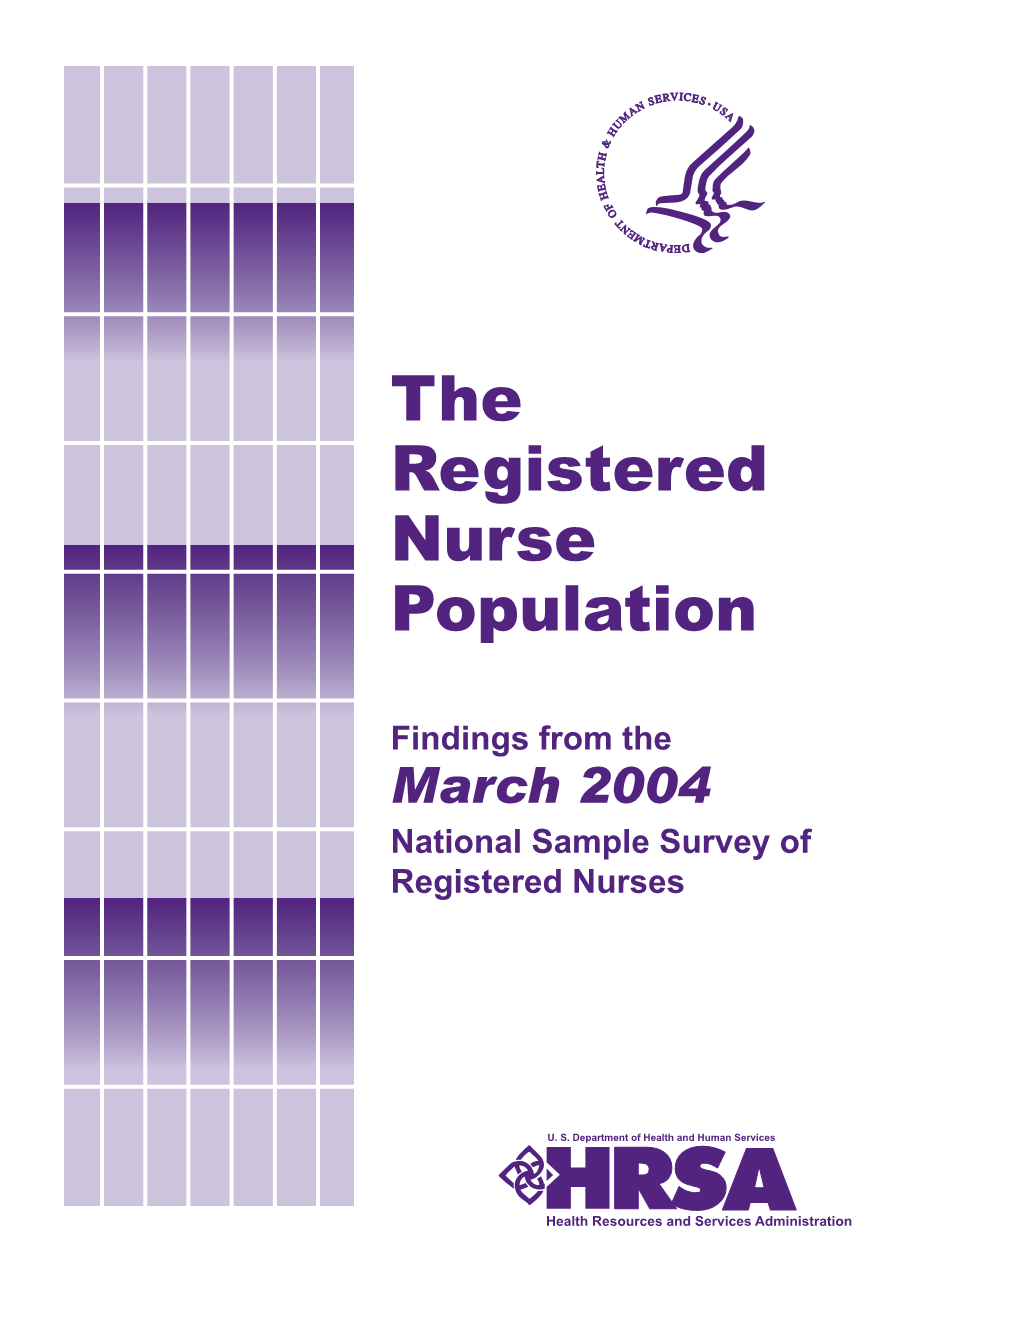 The Registered Nurse Population 1980 – 2004